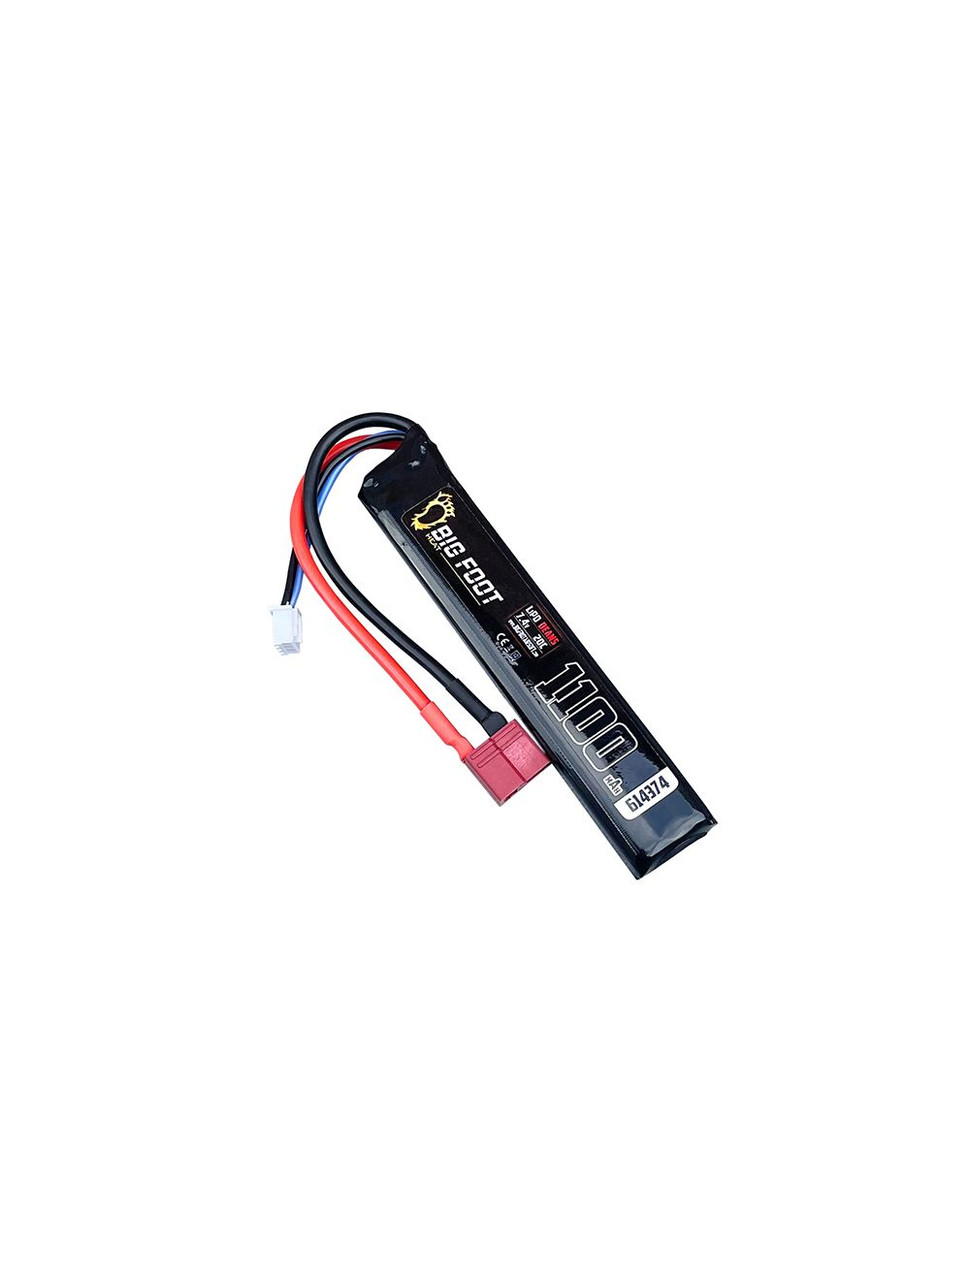 Big Foot Heat Lipo Battery 1100 mAh 7.4v 20c (Stick - 100mm - VZ58 Compatible - DEANS)